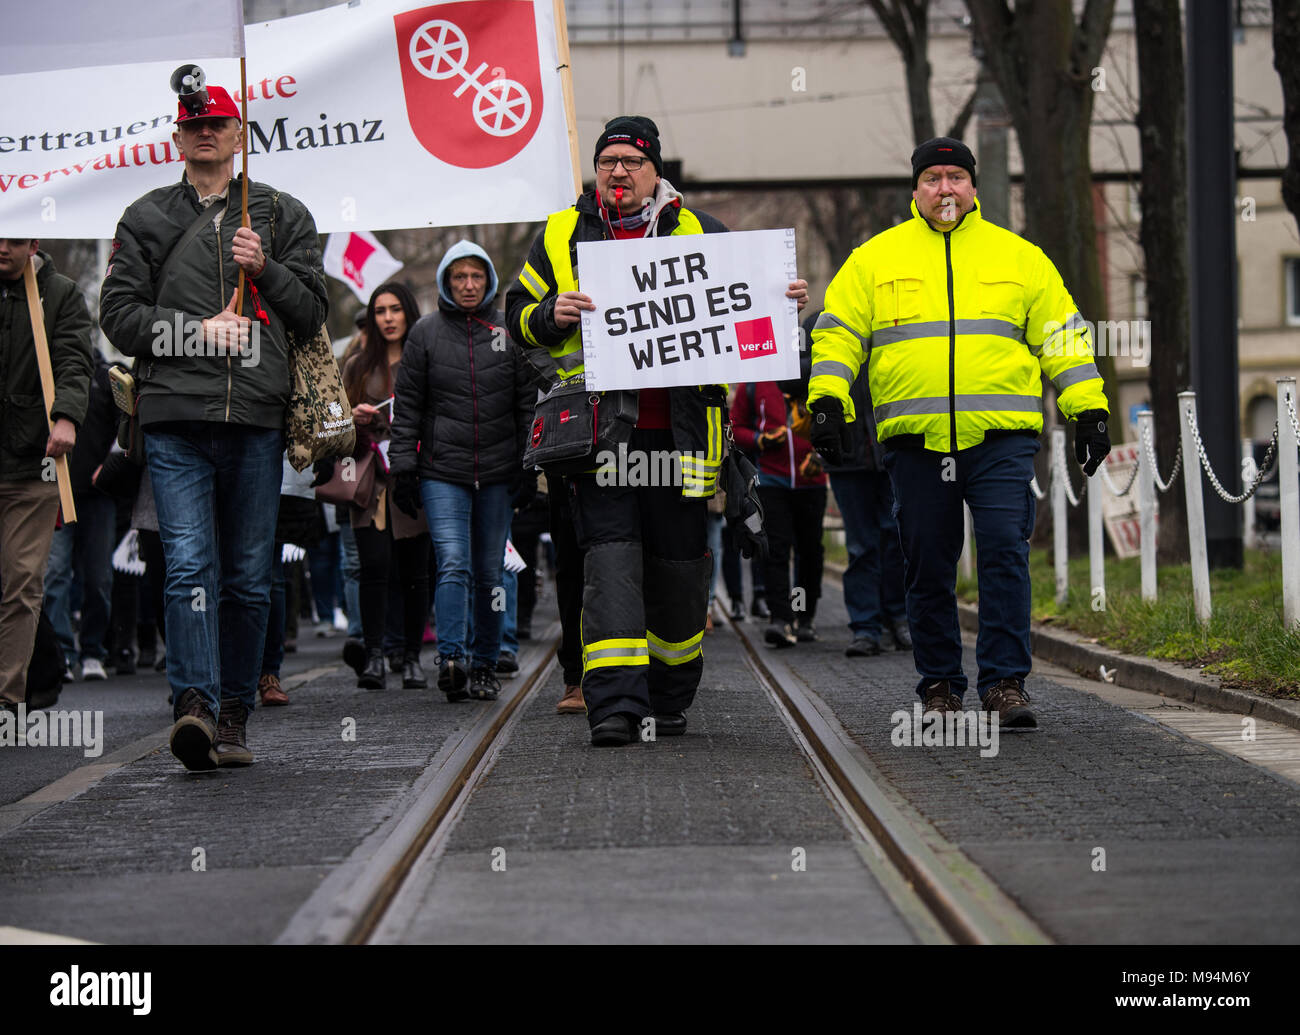 22 mars 2018, l'Allemagne, Mainz : Un homme ayant participé à la démonstration de Verdi avec un placard. Le syndicat Verdi a appelé les grèves d'avertissement Photo : Andreas Arnold/dpa Banque D'Images